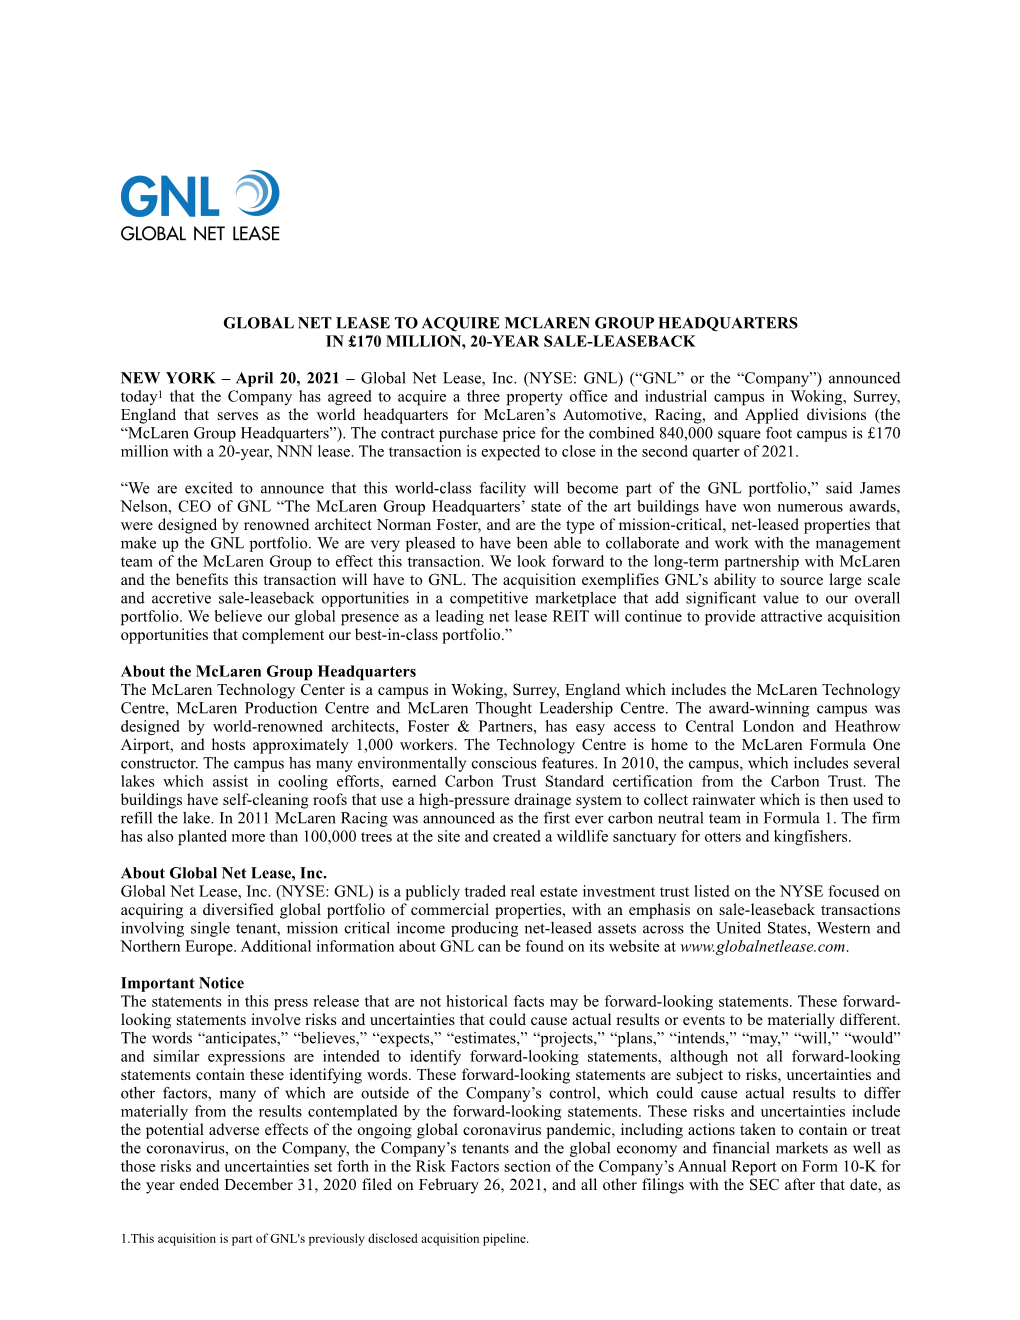 GNL-Mclaren Press Release